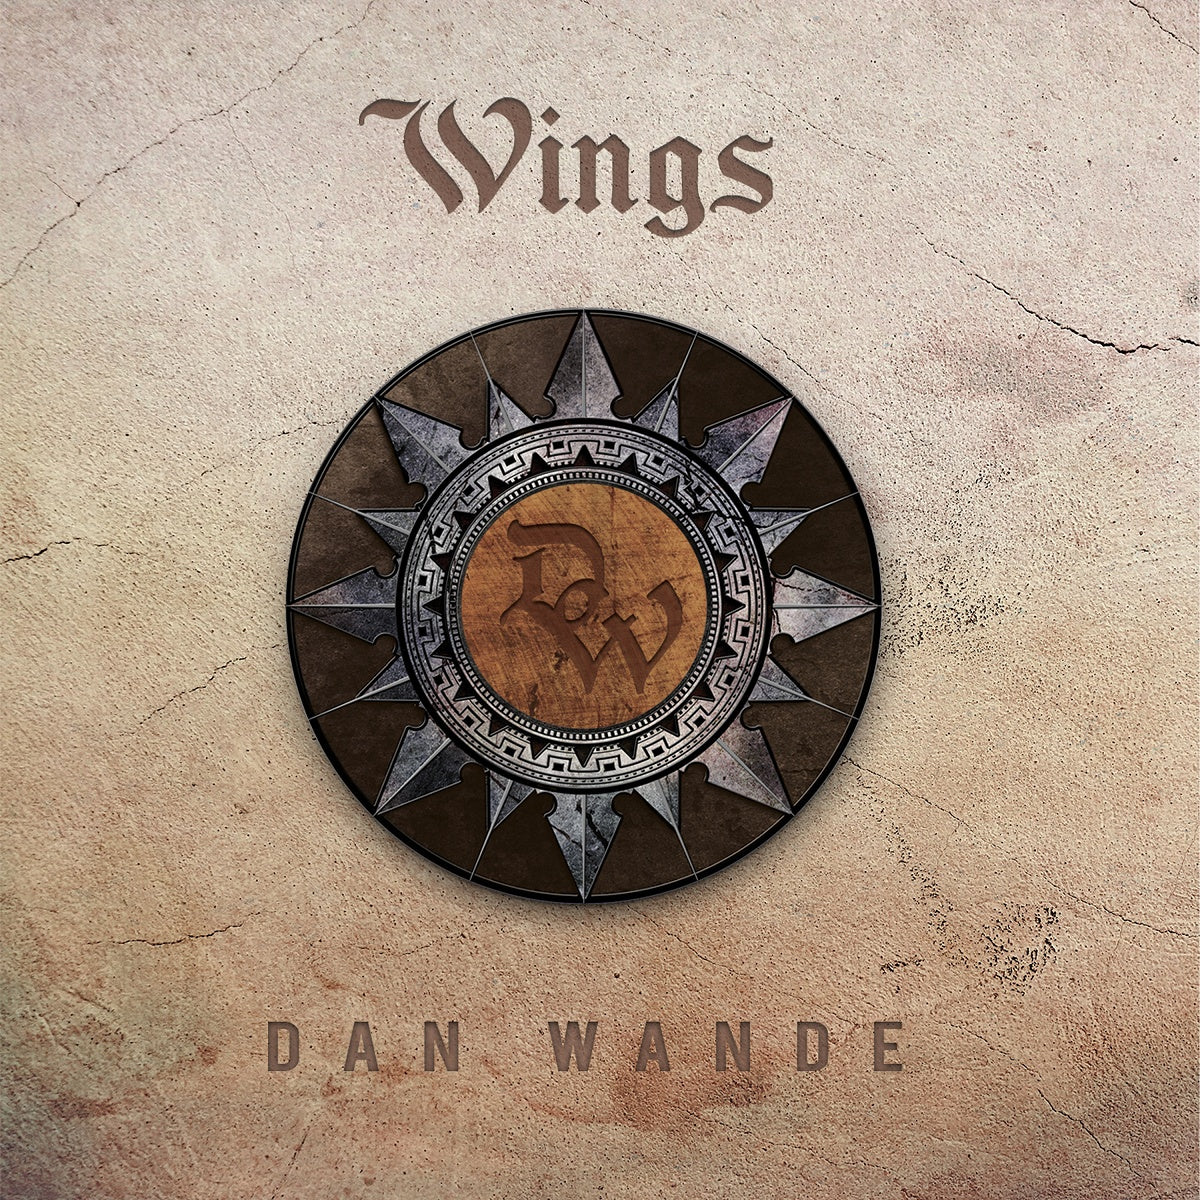 Dan Wande – ‘Wings’